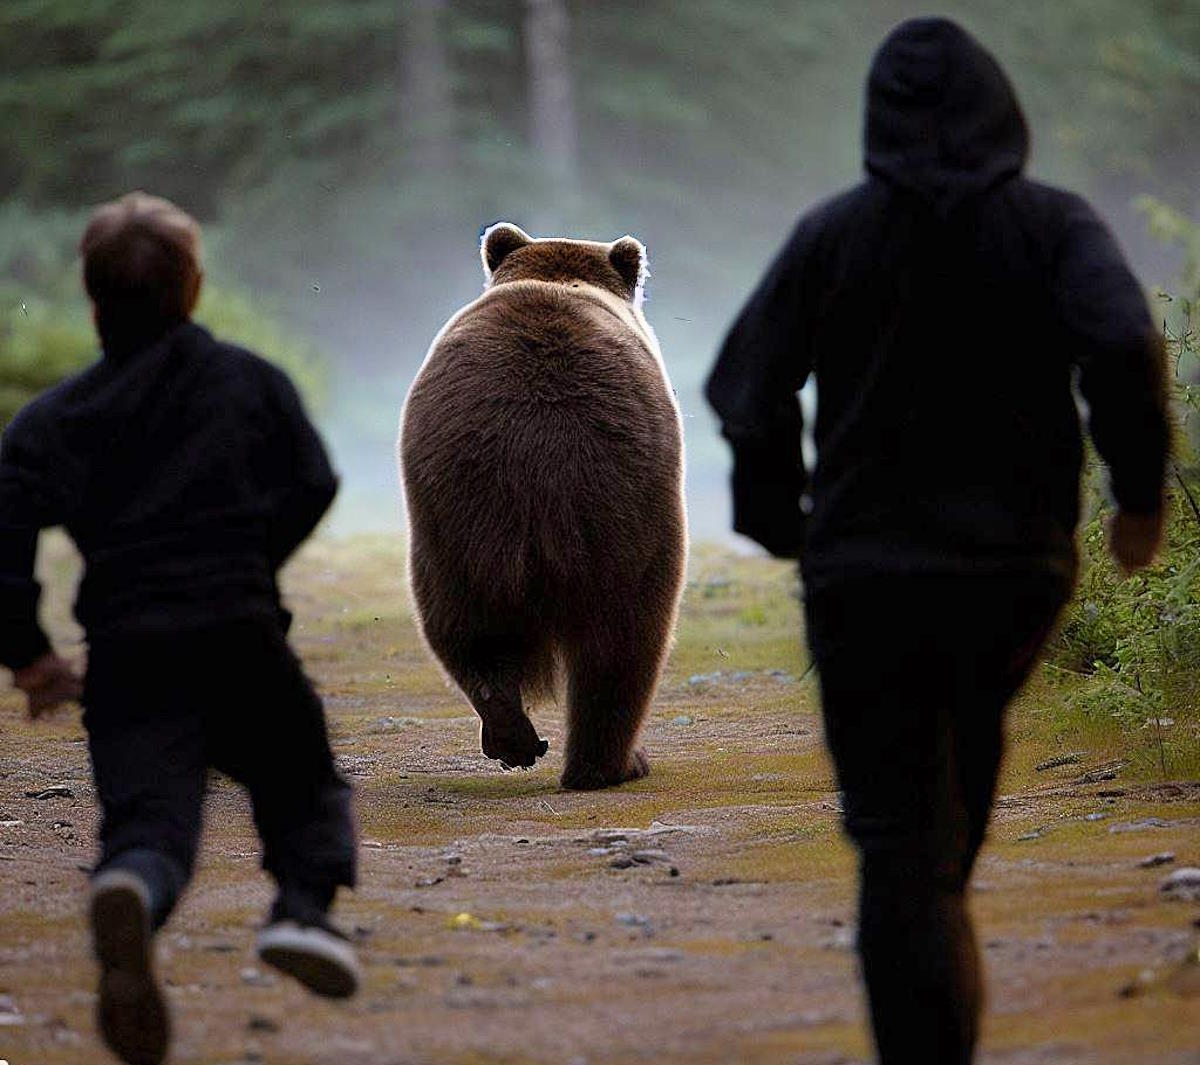 In Trentino un'orsa mette in fuga due persone per difendere un cucciolo e la PAT ne minaccia l'abbattimento